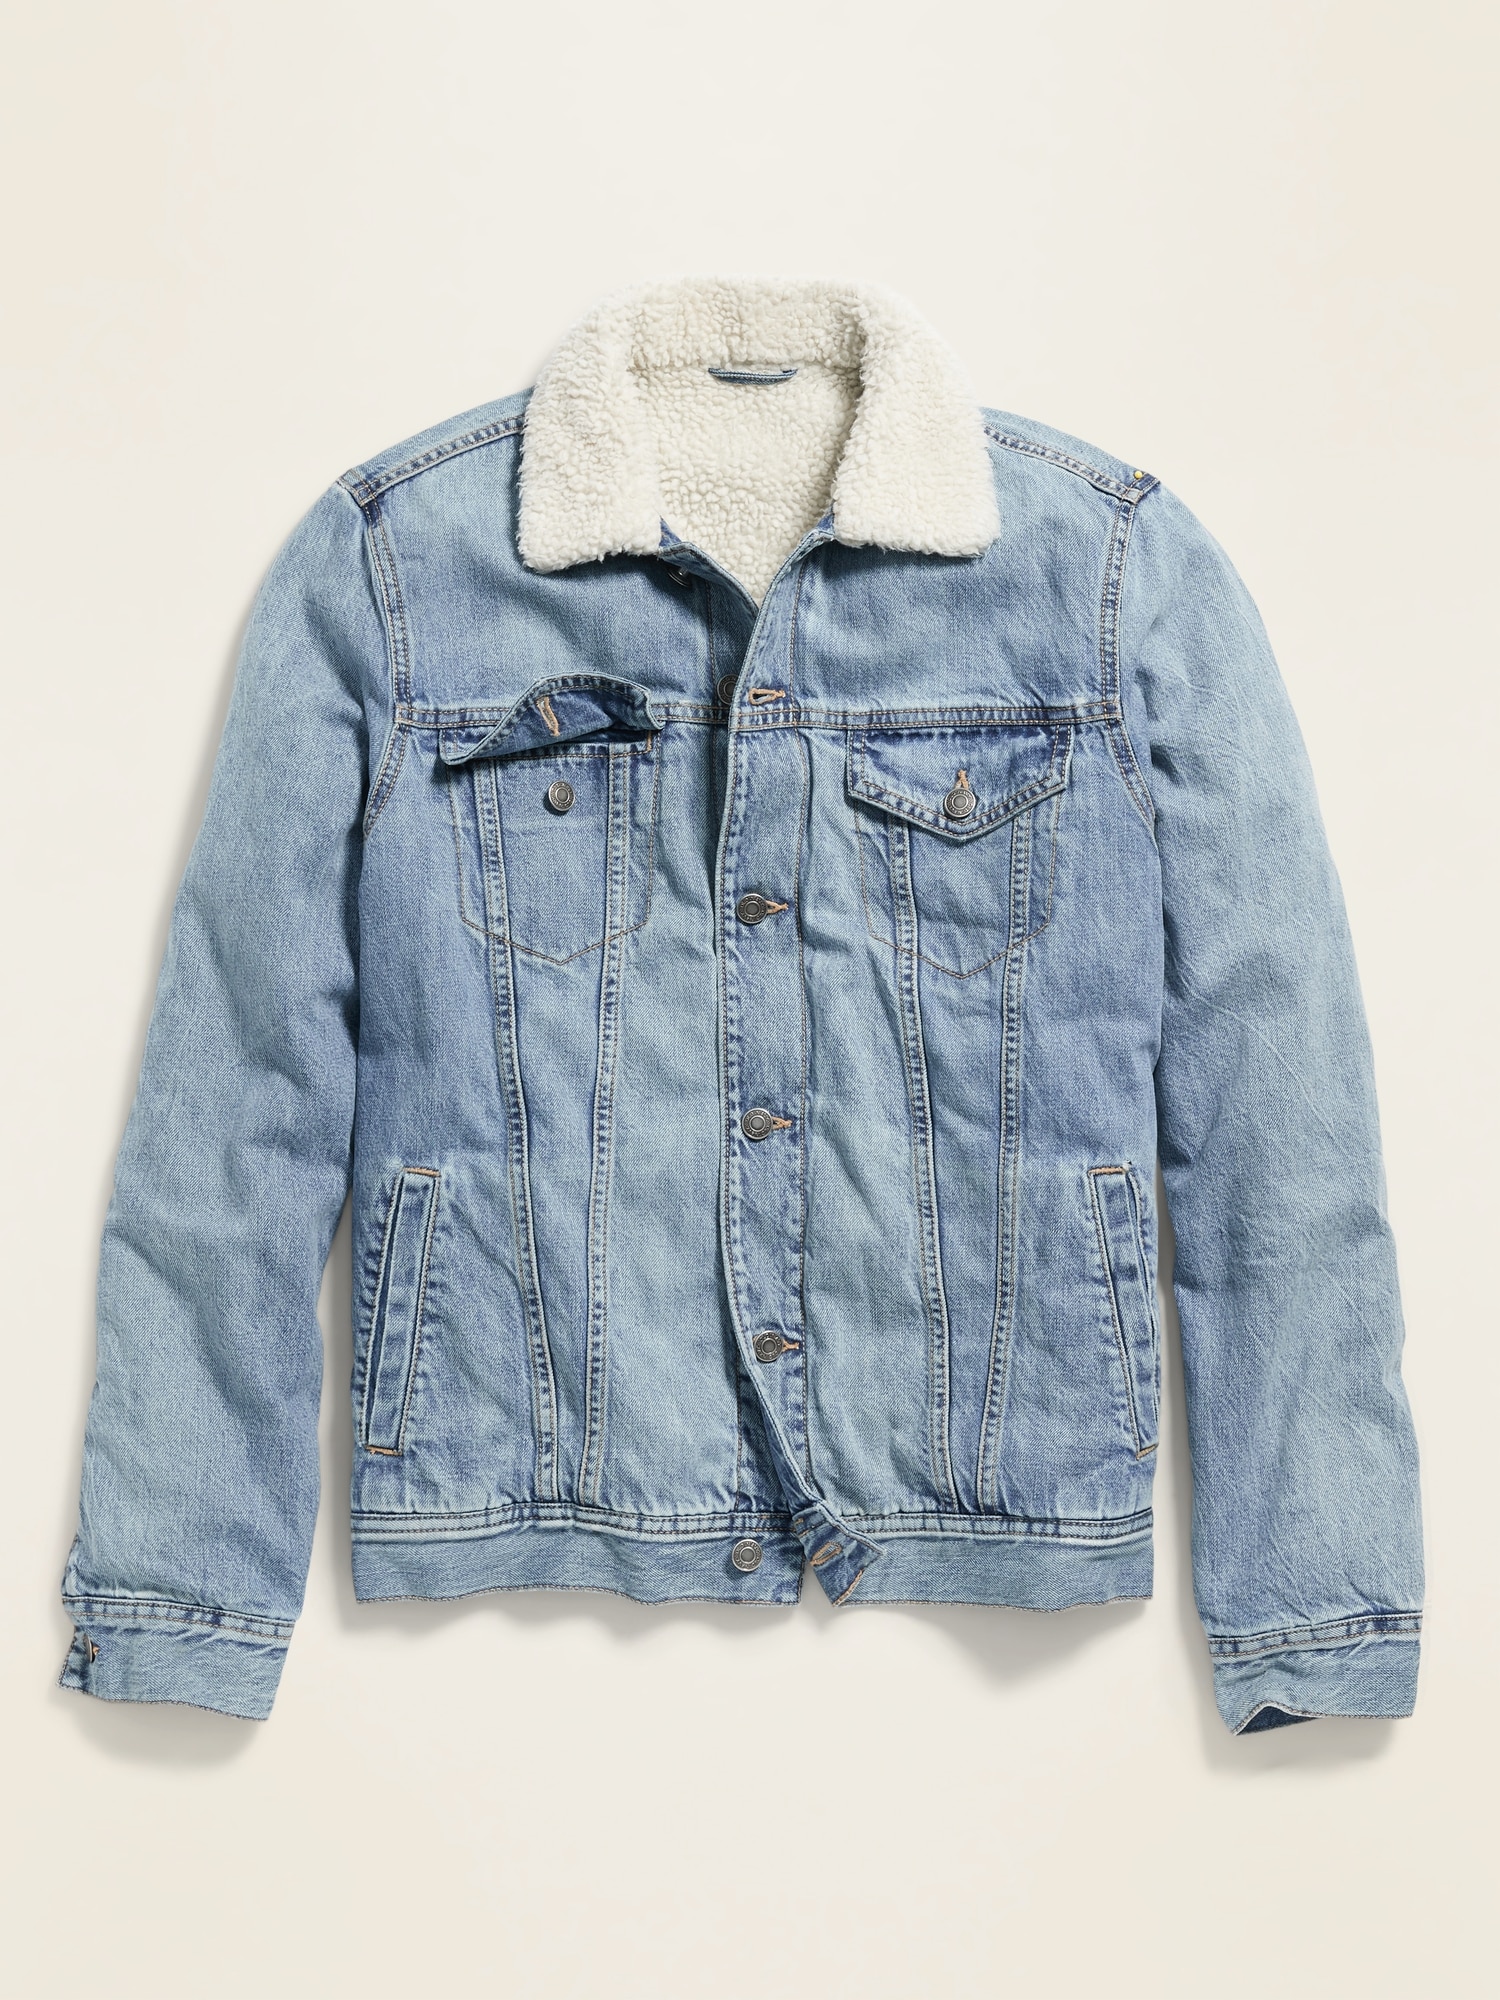 sherpa lined jean jacket mens